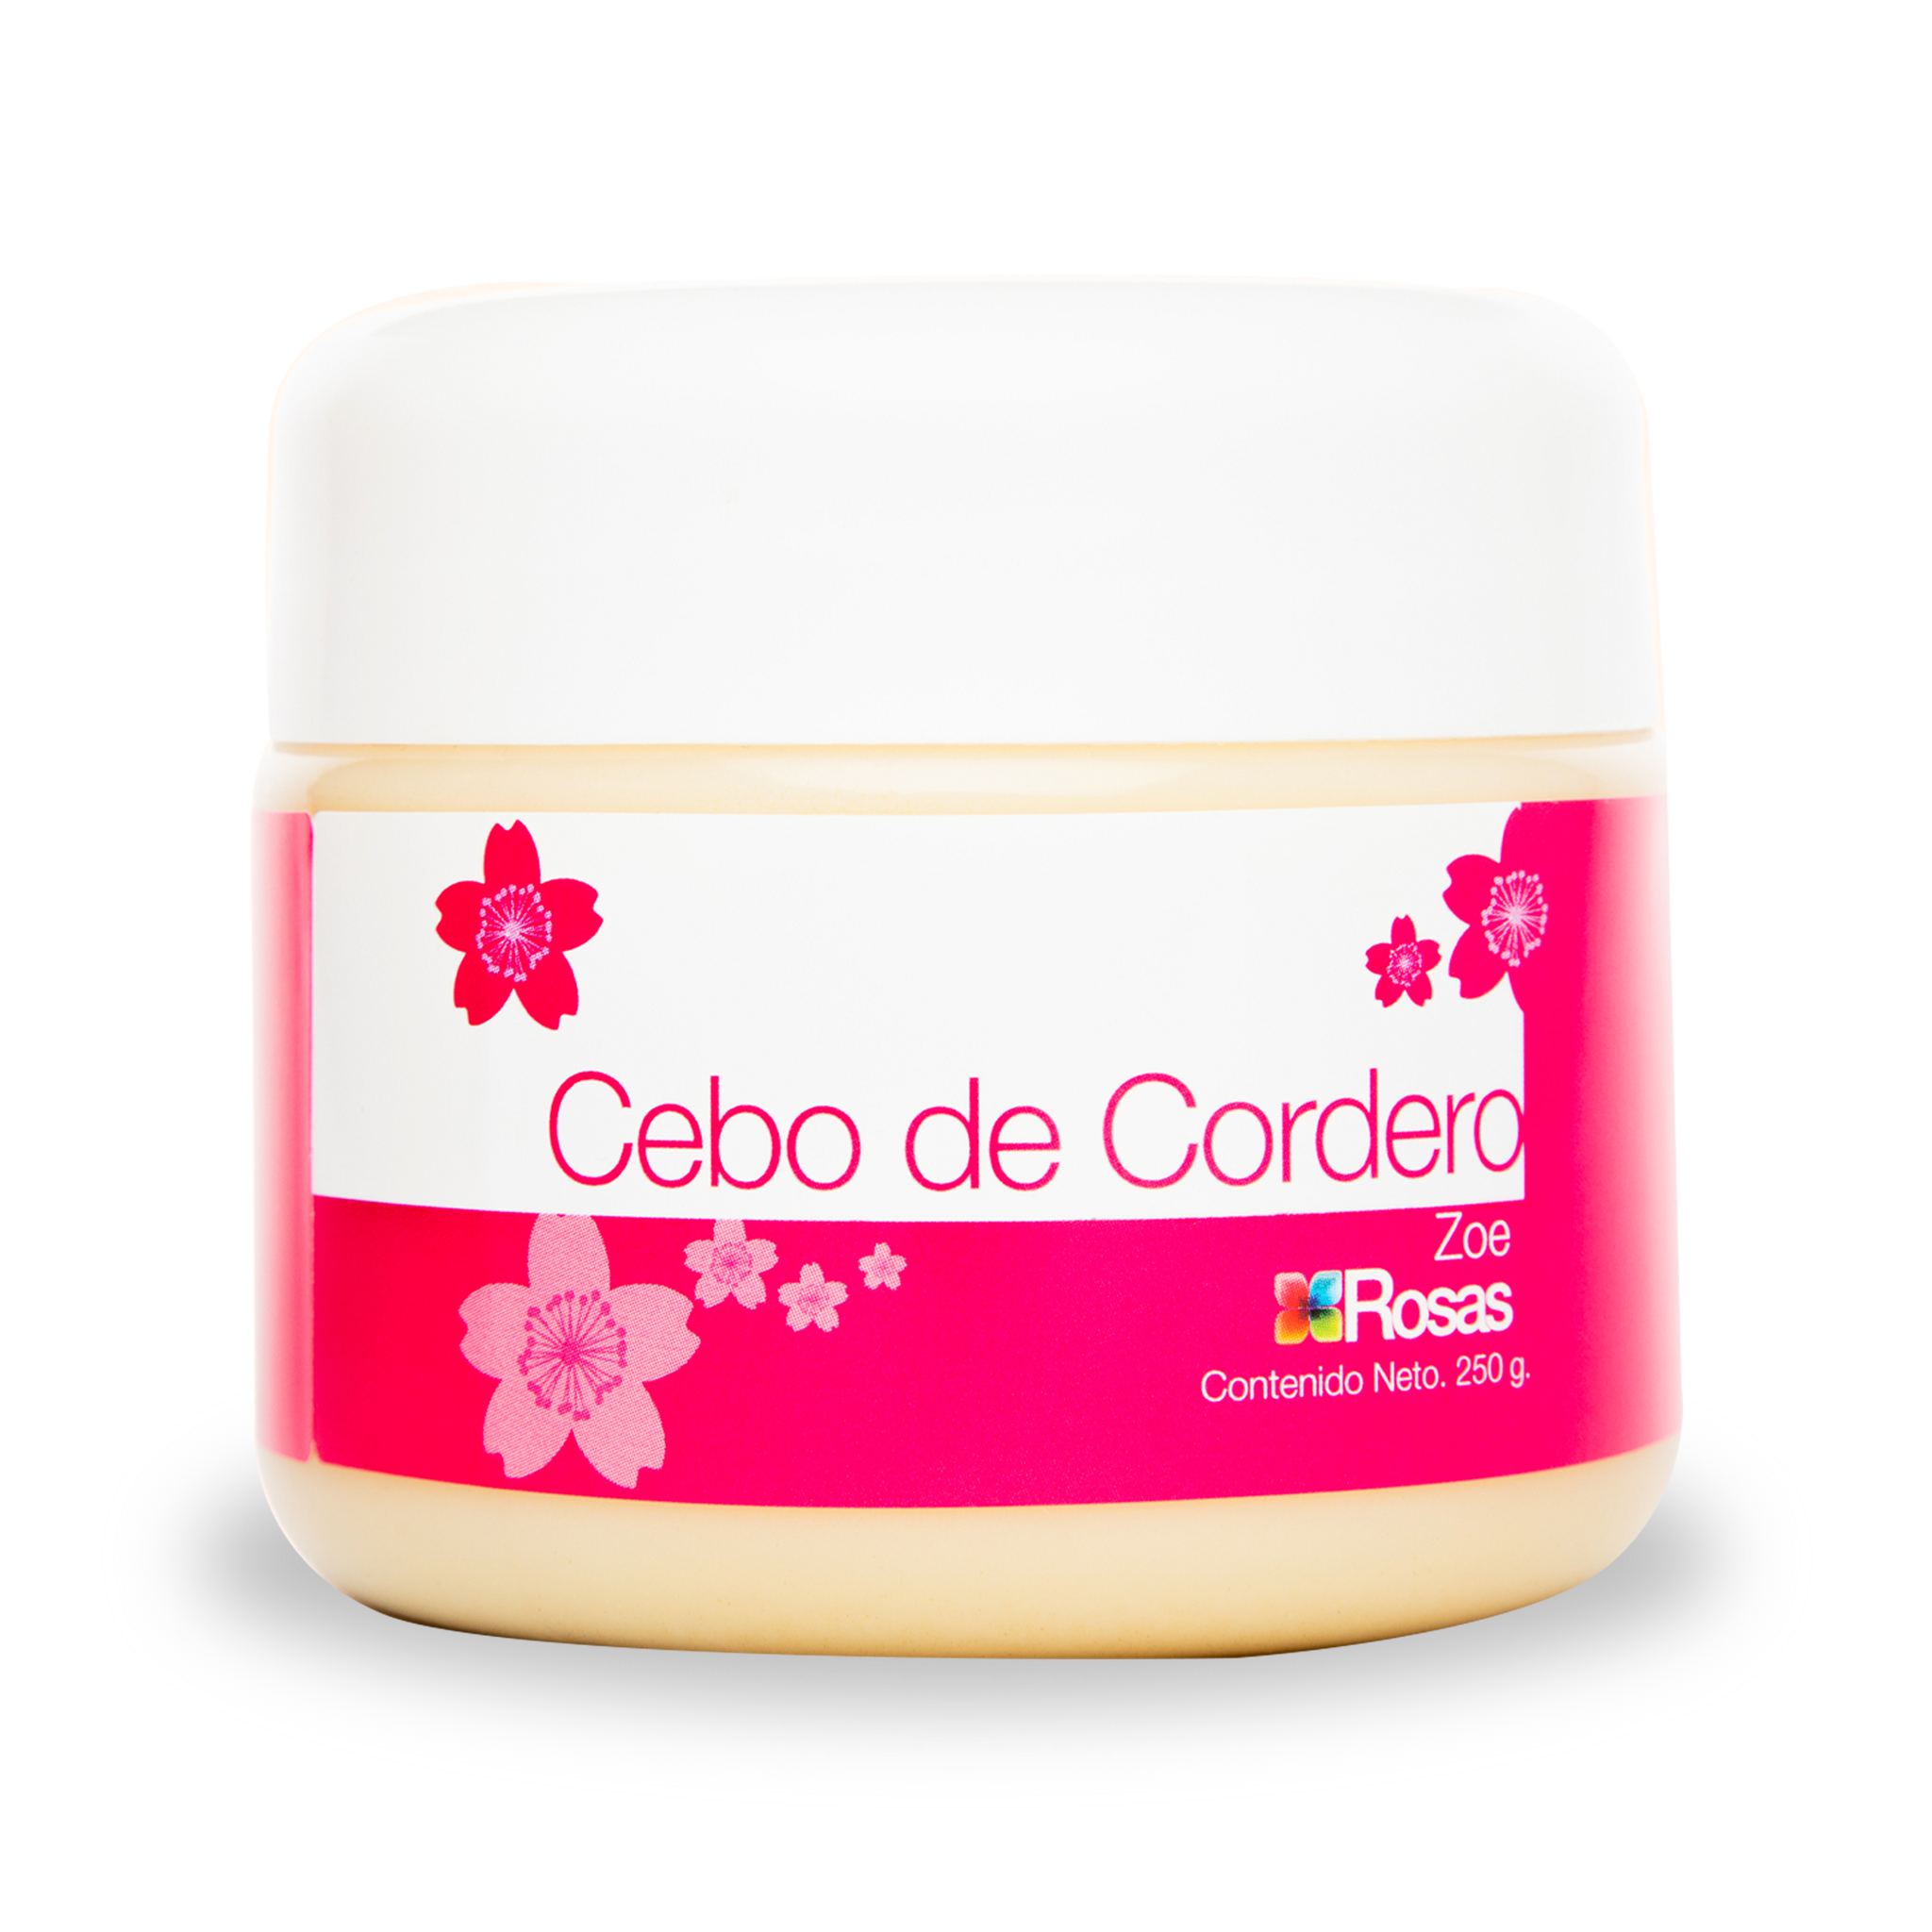 Crema Cebo de Cordero ZOE * 250 g